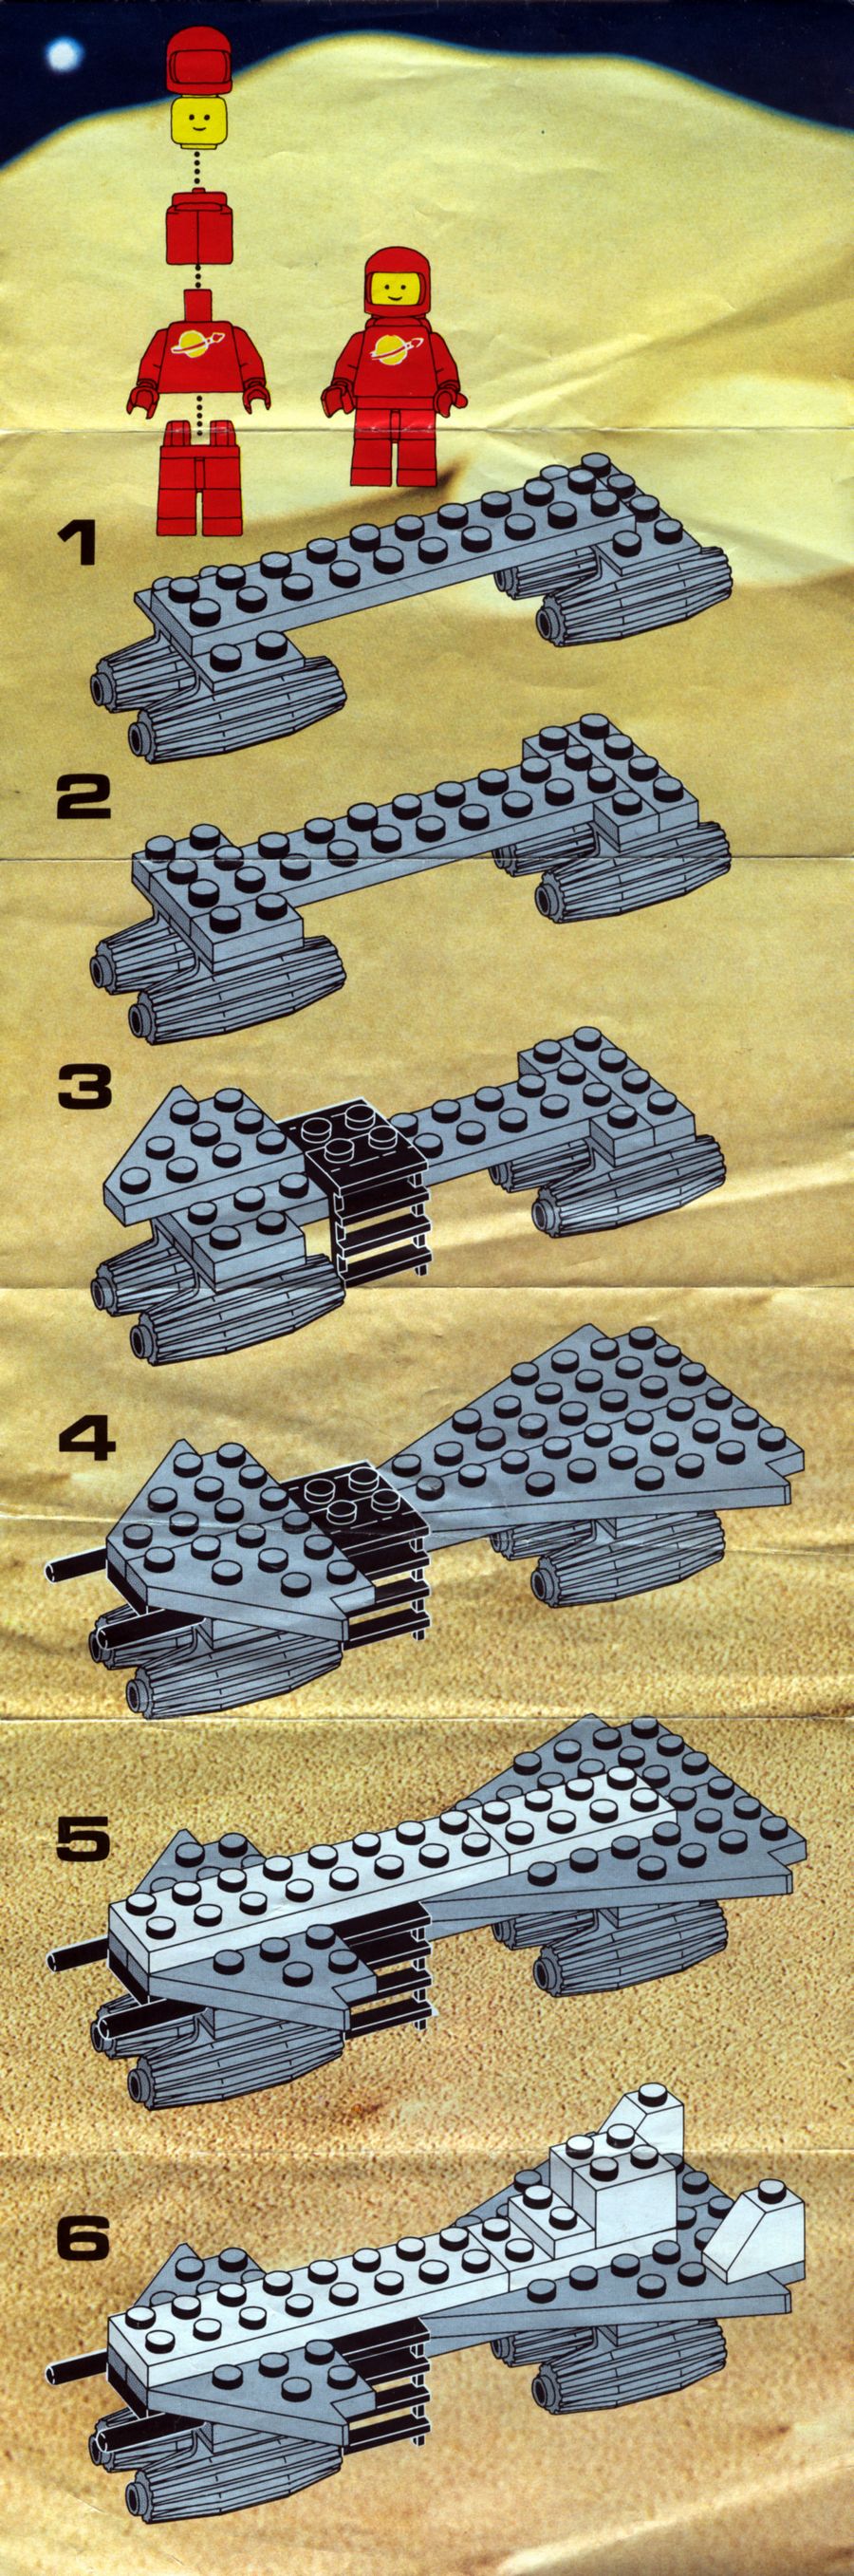 LEGO 6842